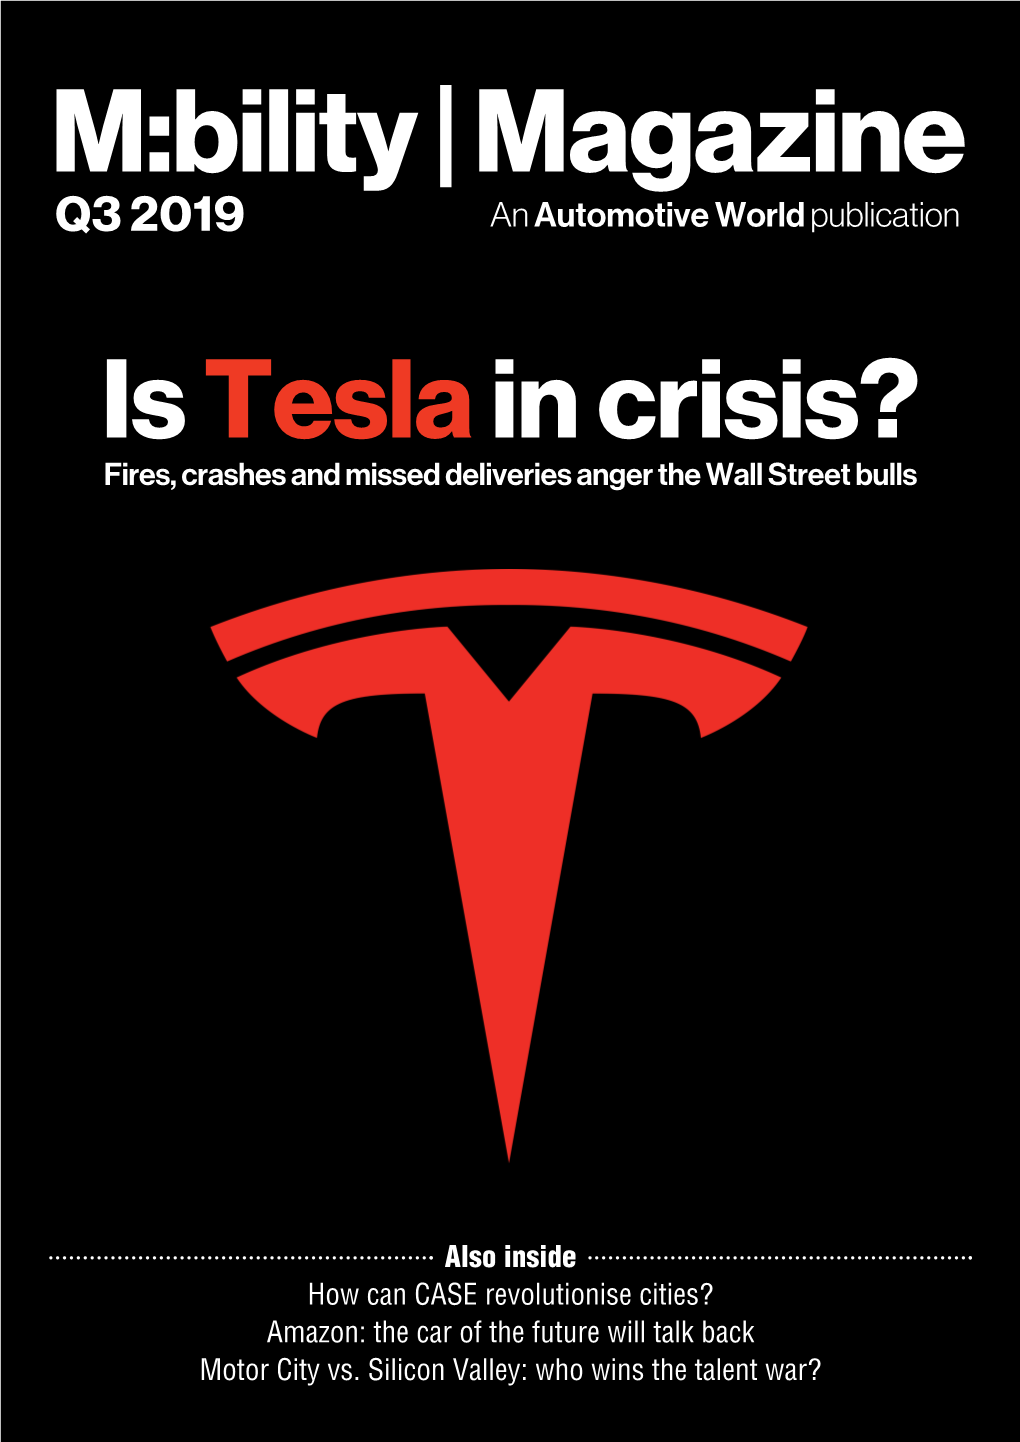 M:Bility | Magazine Q  an Automotive World Publication Is Tesla in Crisis? Fires, Crashes and Missed Deliveries Anger the Wall Street Bulls